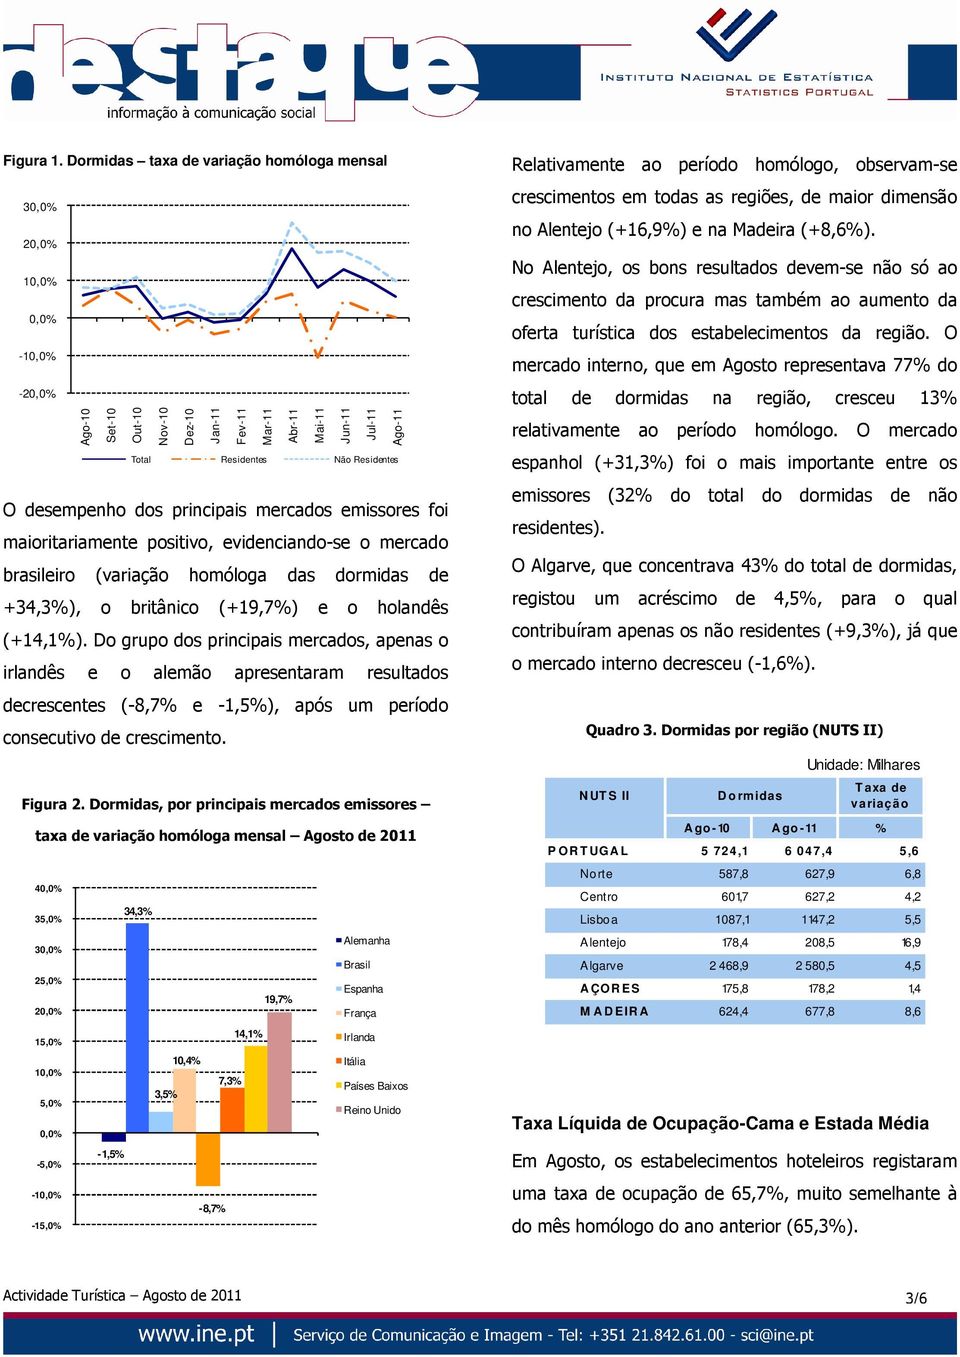 principais mercados emissores foi maioritariamente positivo, evidenciando-se o mercado brasileiro ( homóloga das dormidas de +34,3%), o britânico (+19,7%) e o holandês (+14,1%).